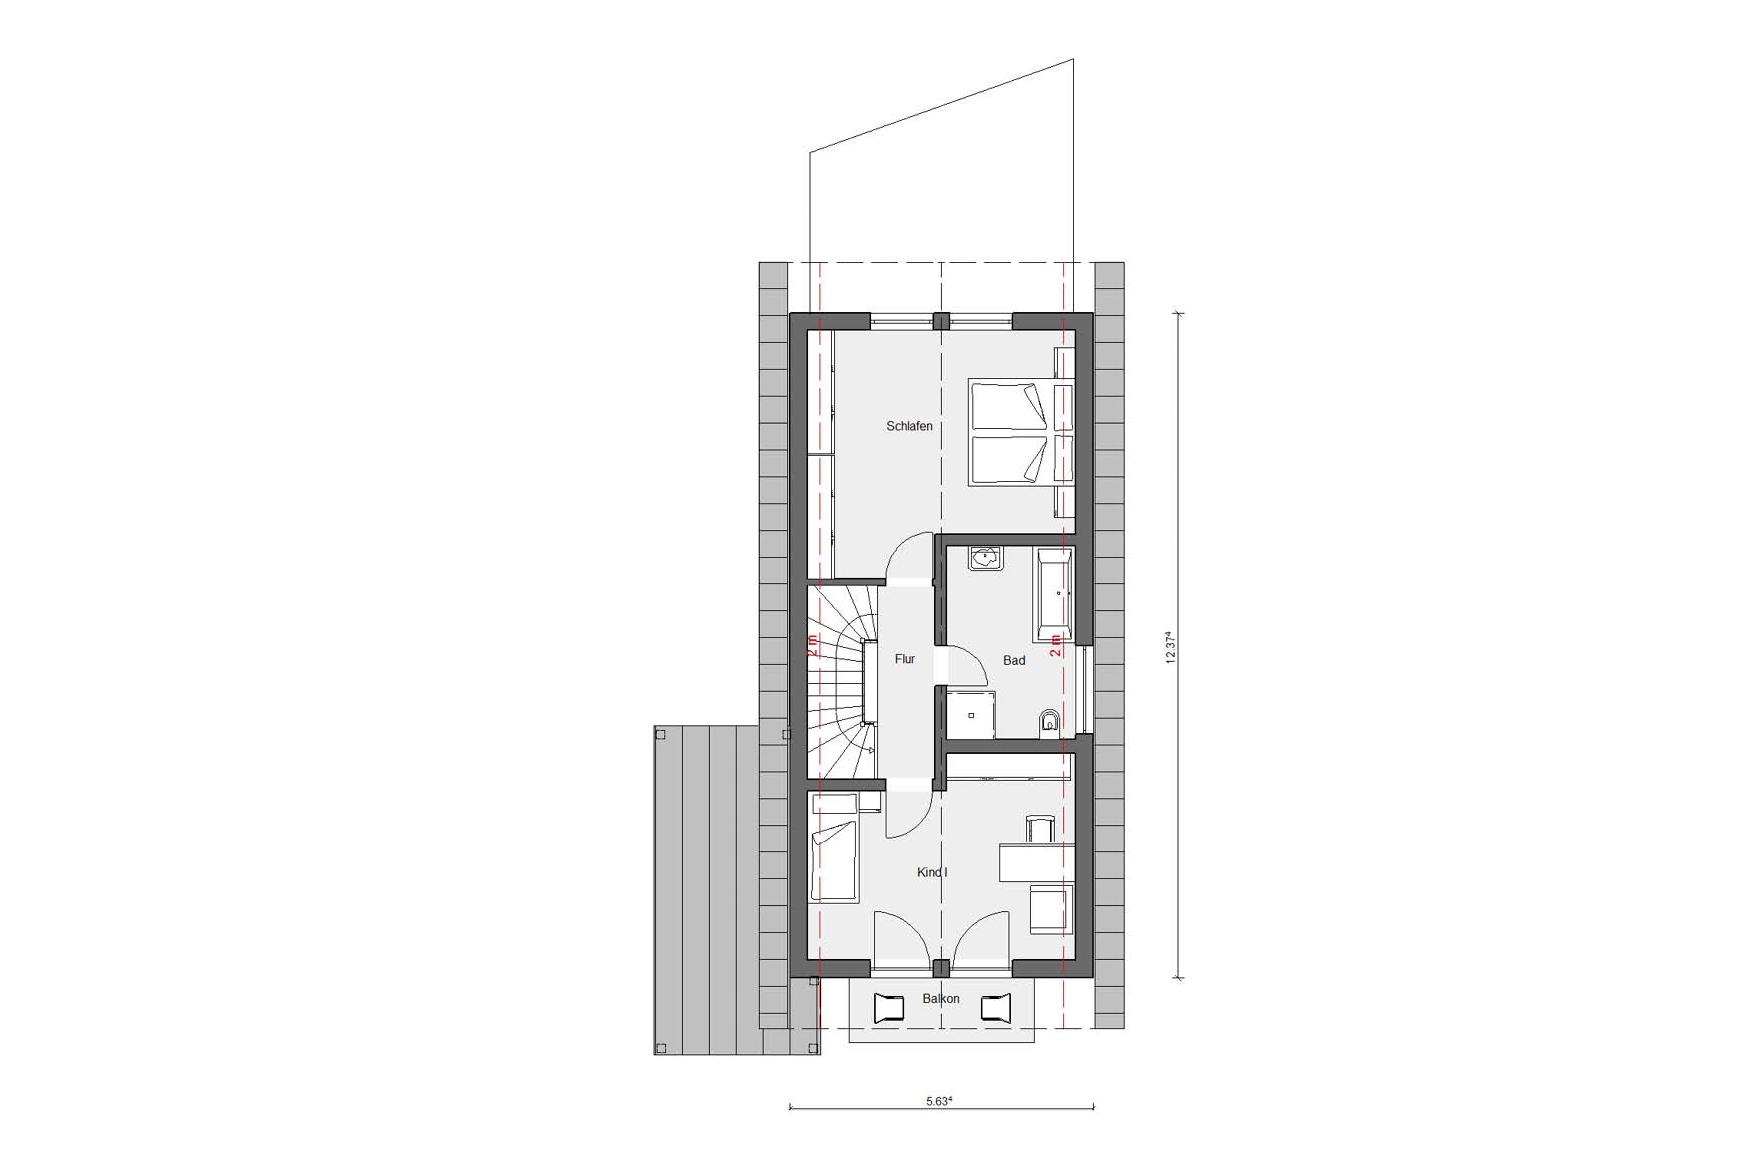 Floor plan attic E 15-150.2 narrow house concept